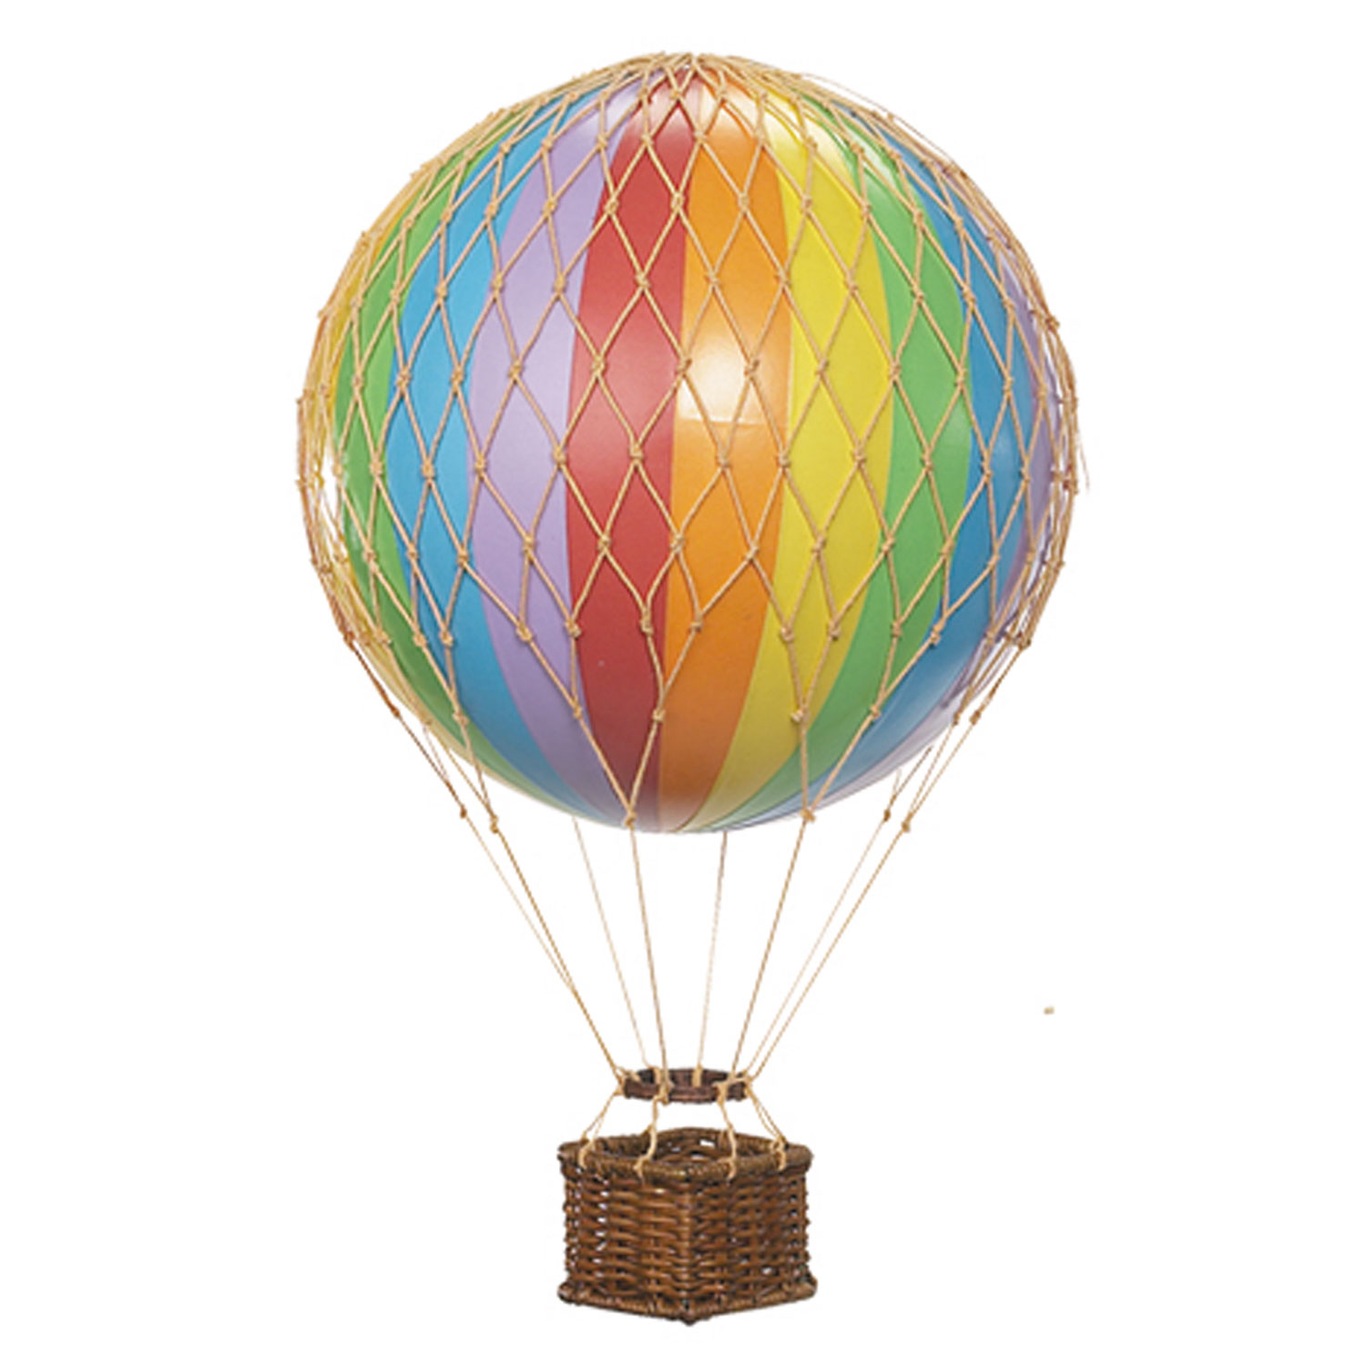 Floating The Skies Heißluftballon 13x8.5 cm, Rainbow